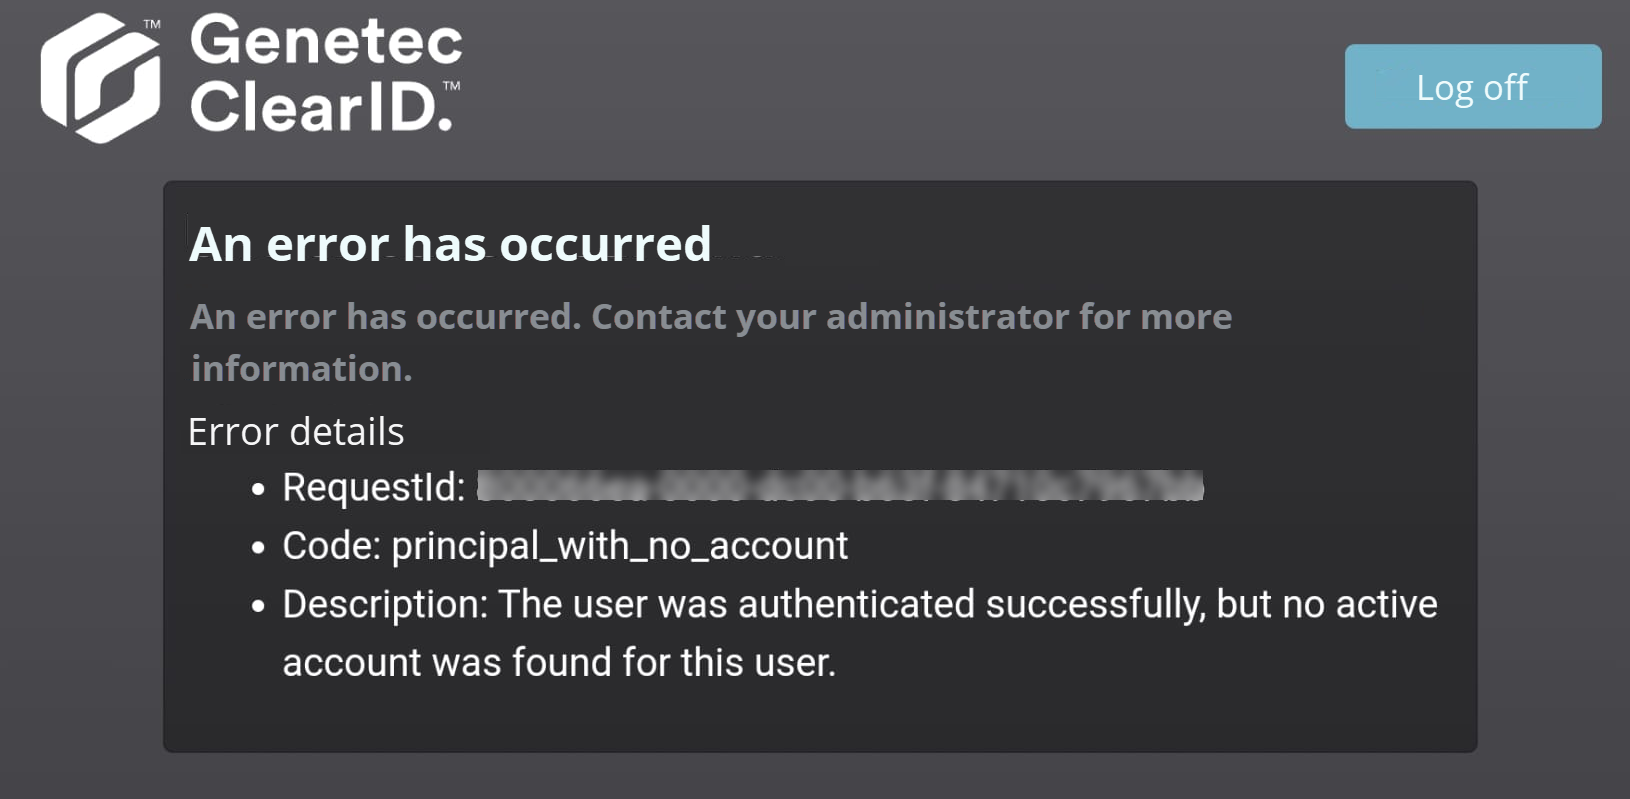 Se ha producido un error en ClearID que informa que no se encontró una cuenta activa del usuario.